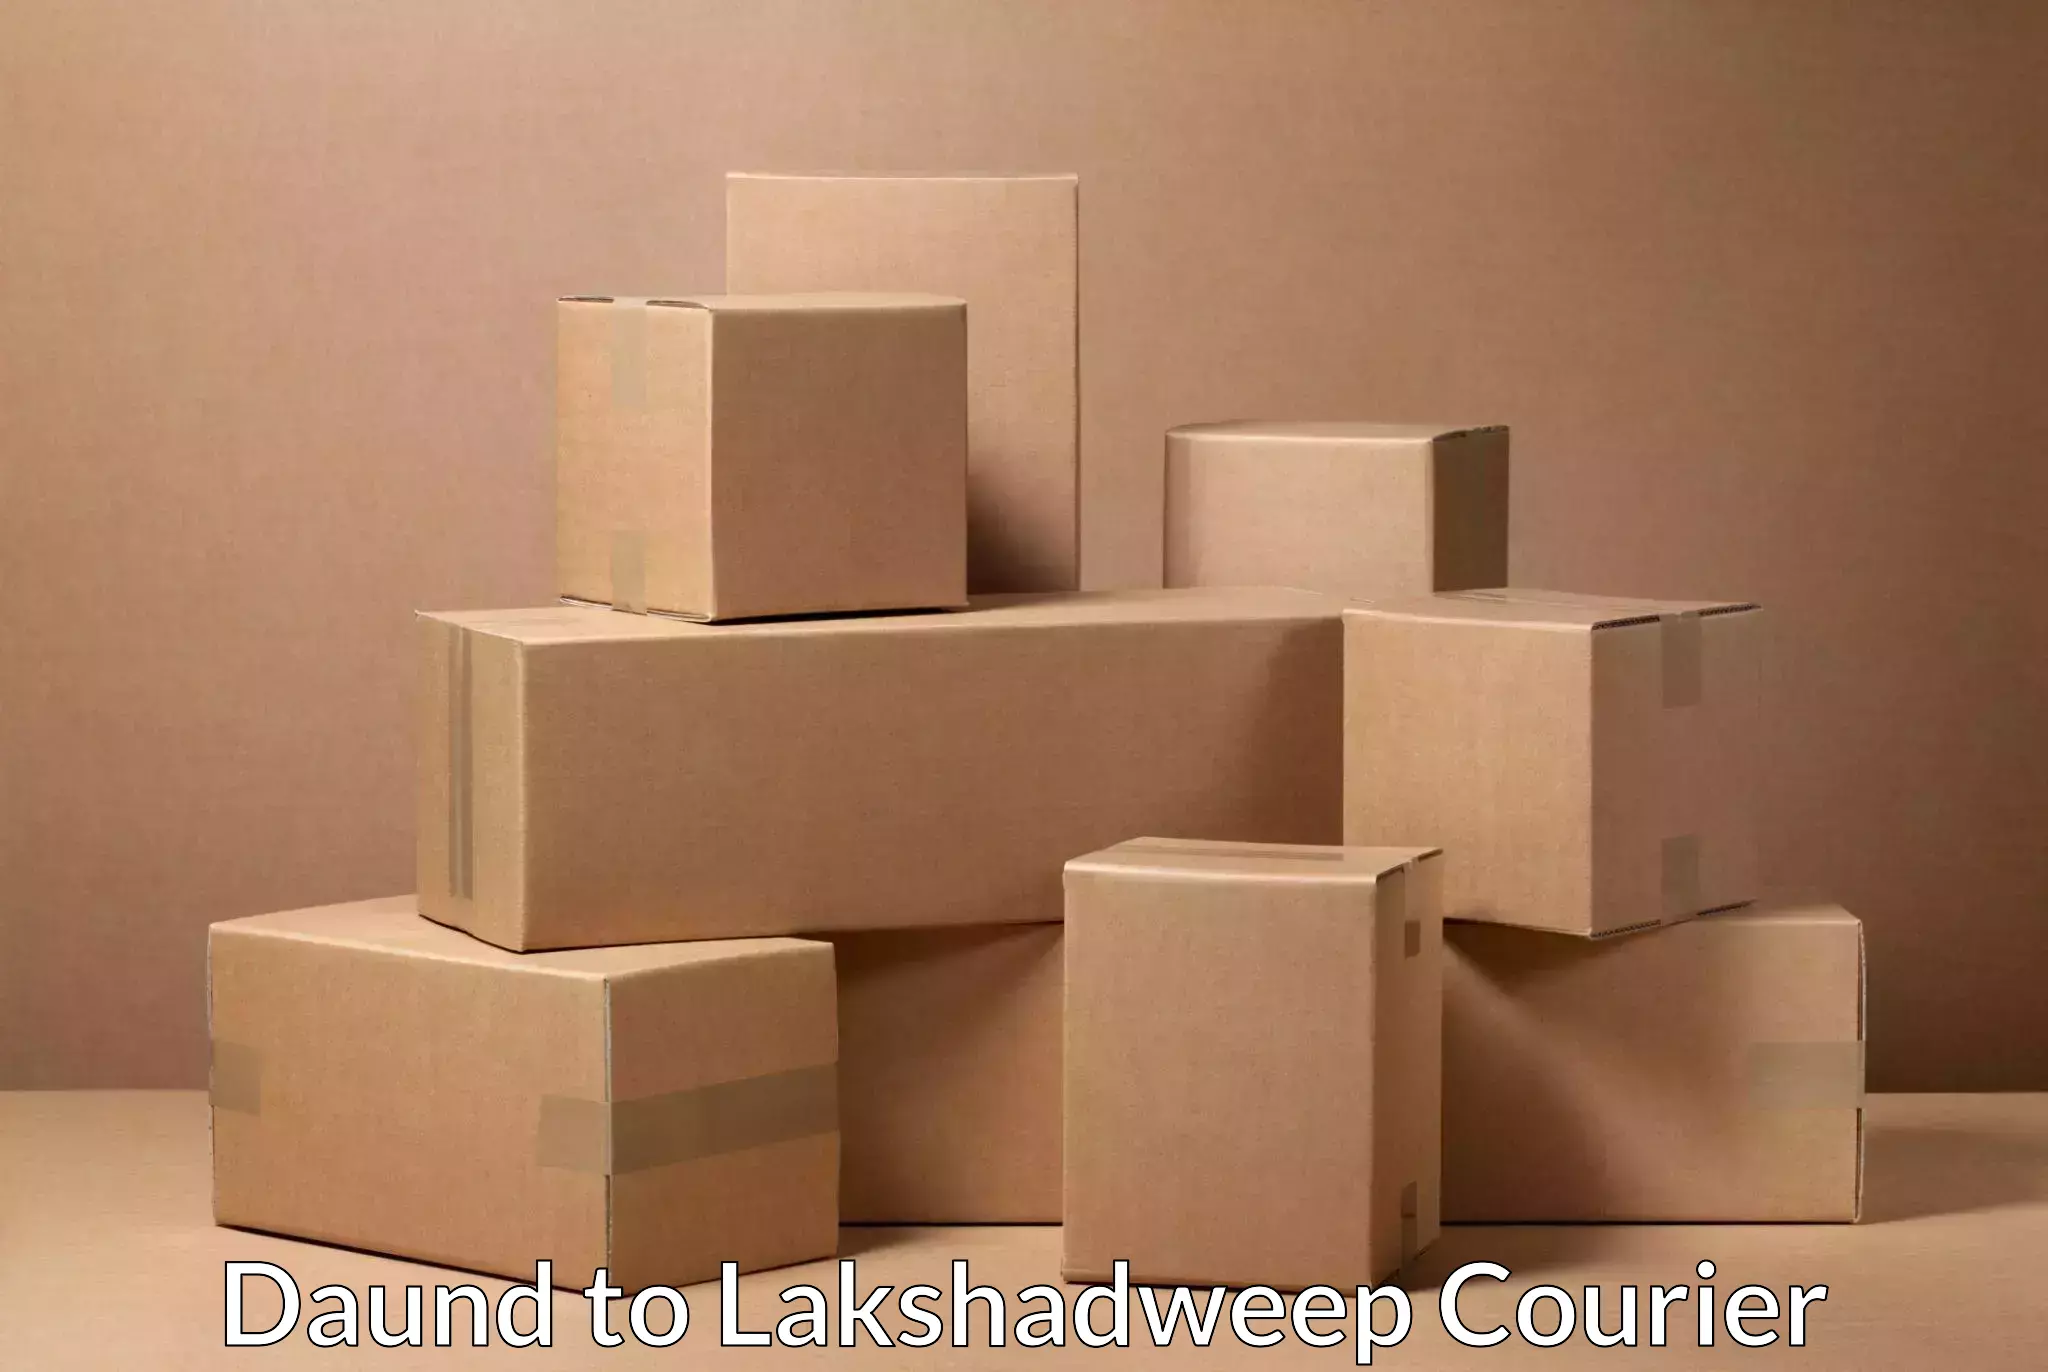 High-priority parcel service Daund to Lakshadweep